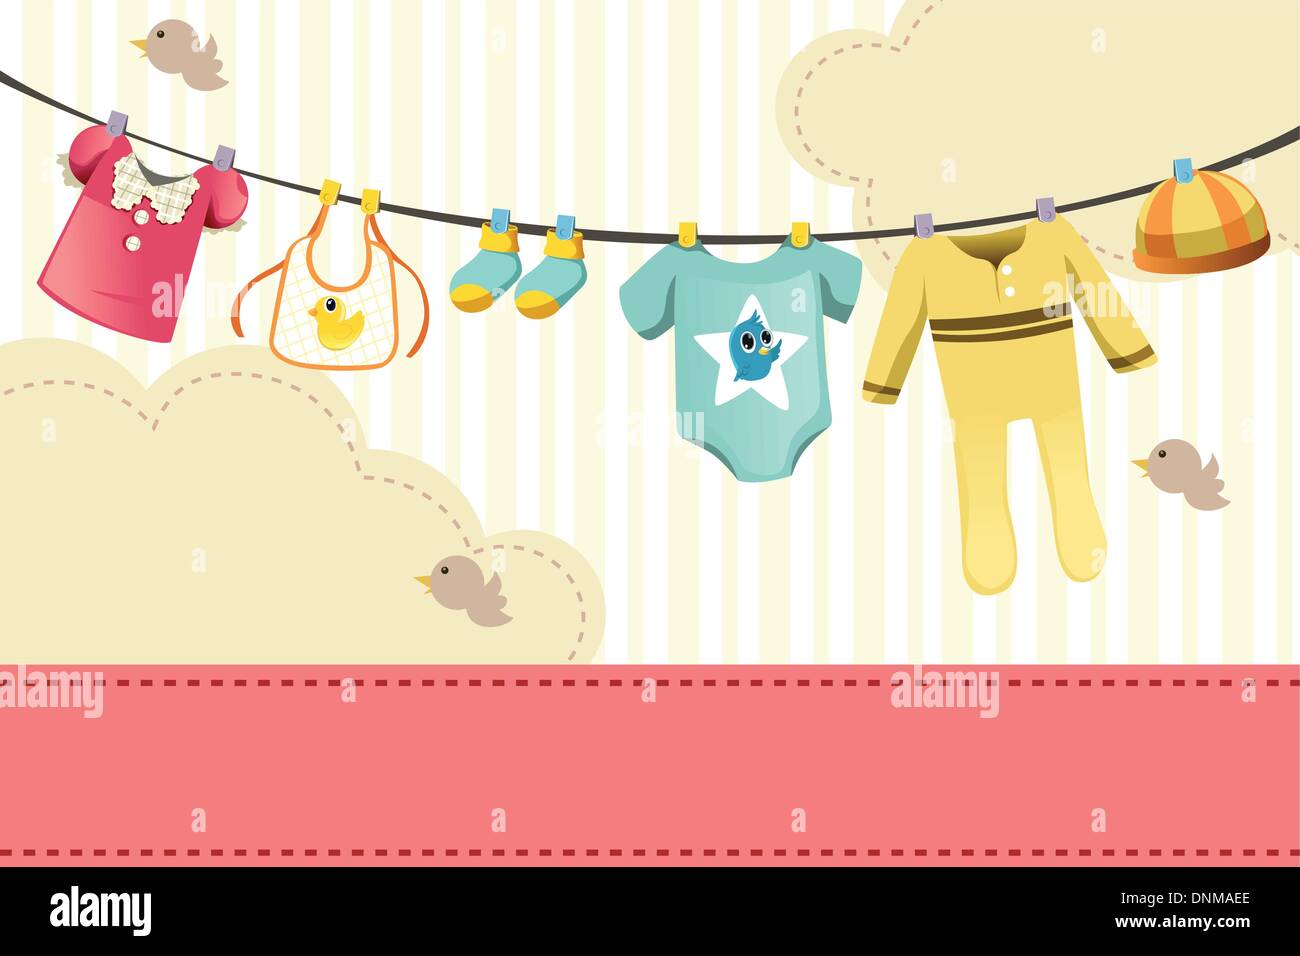 Un vecteur illustration de vêtements bébé sur clothespin Illustration de Vecteur